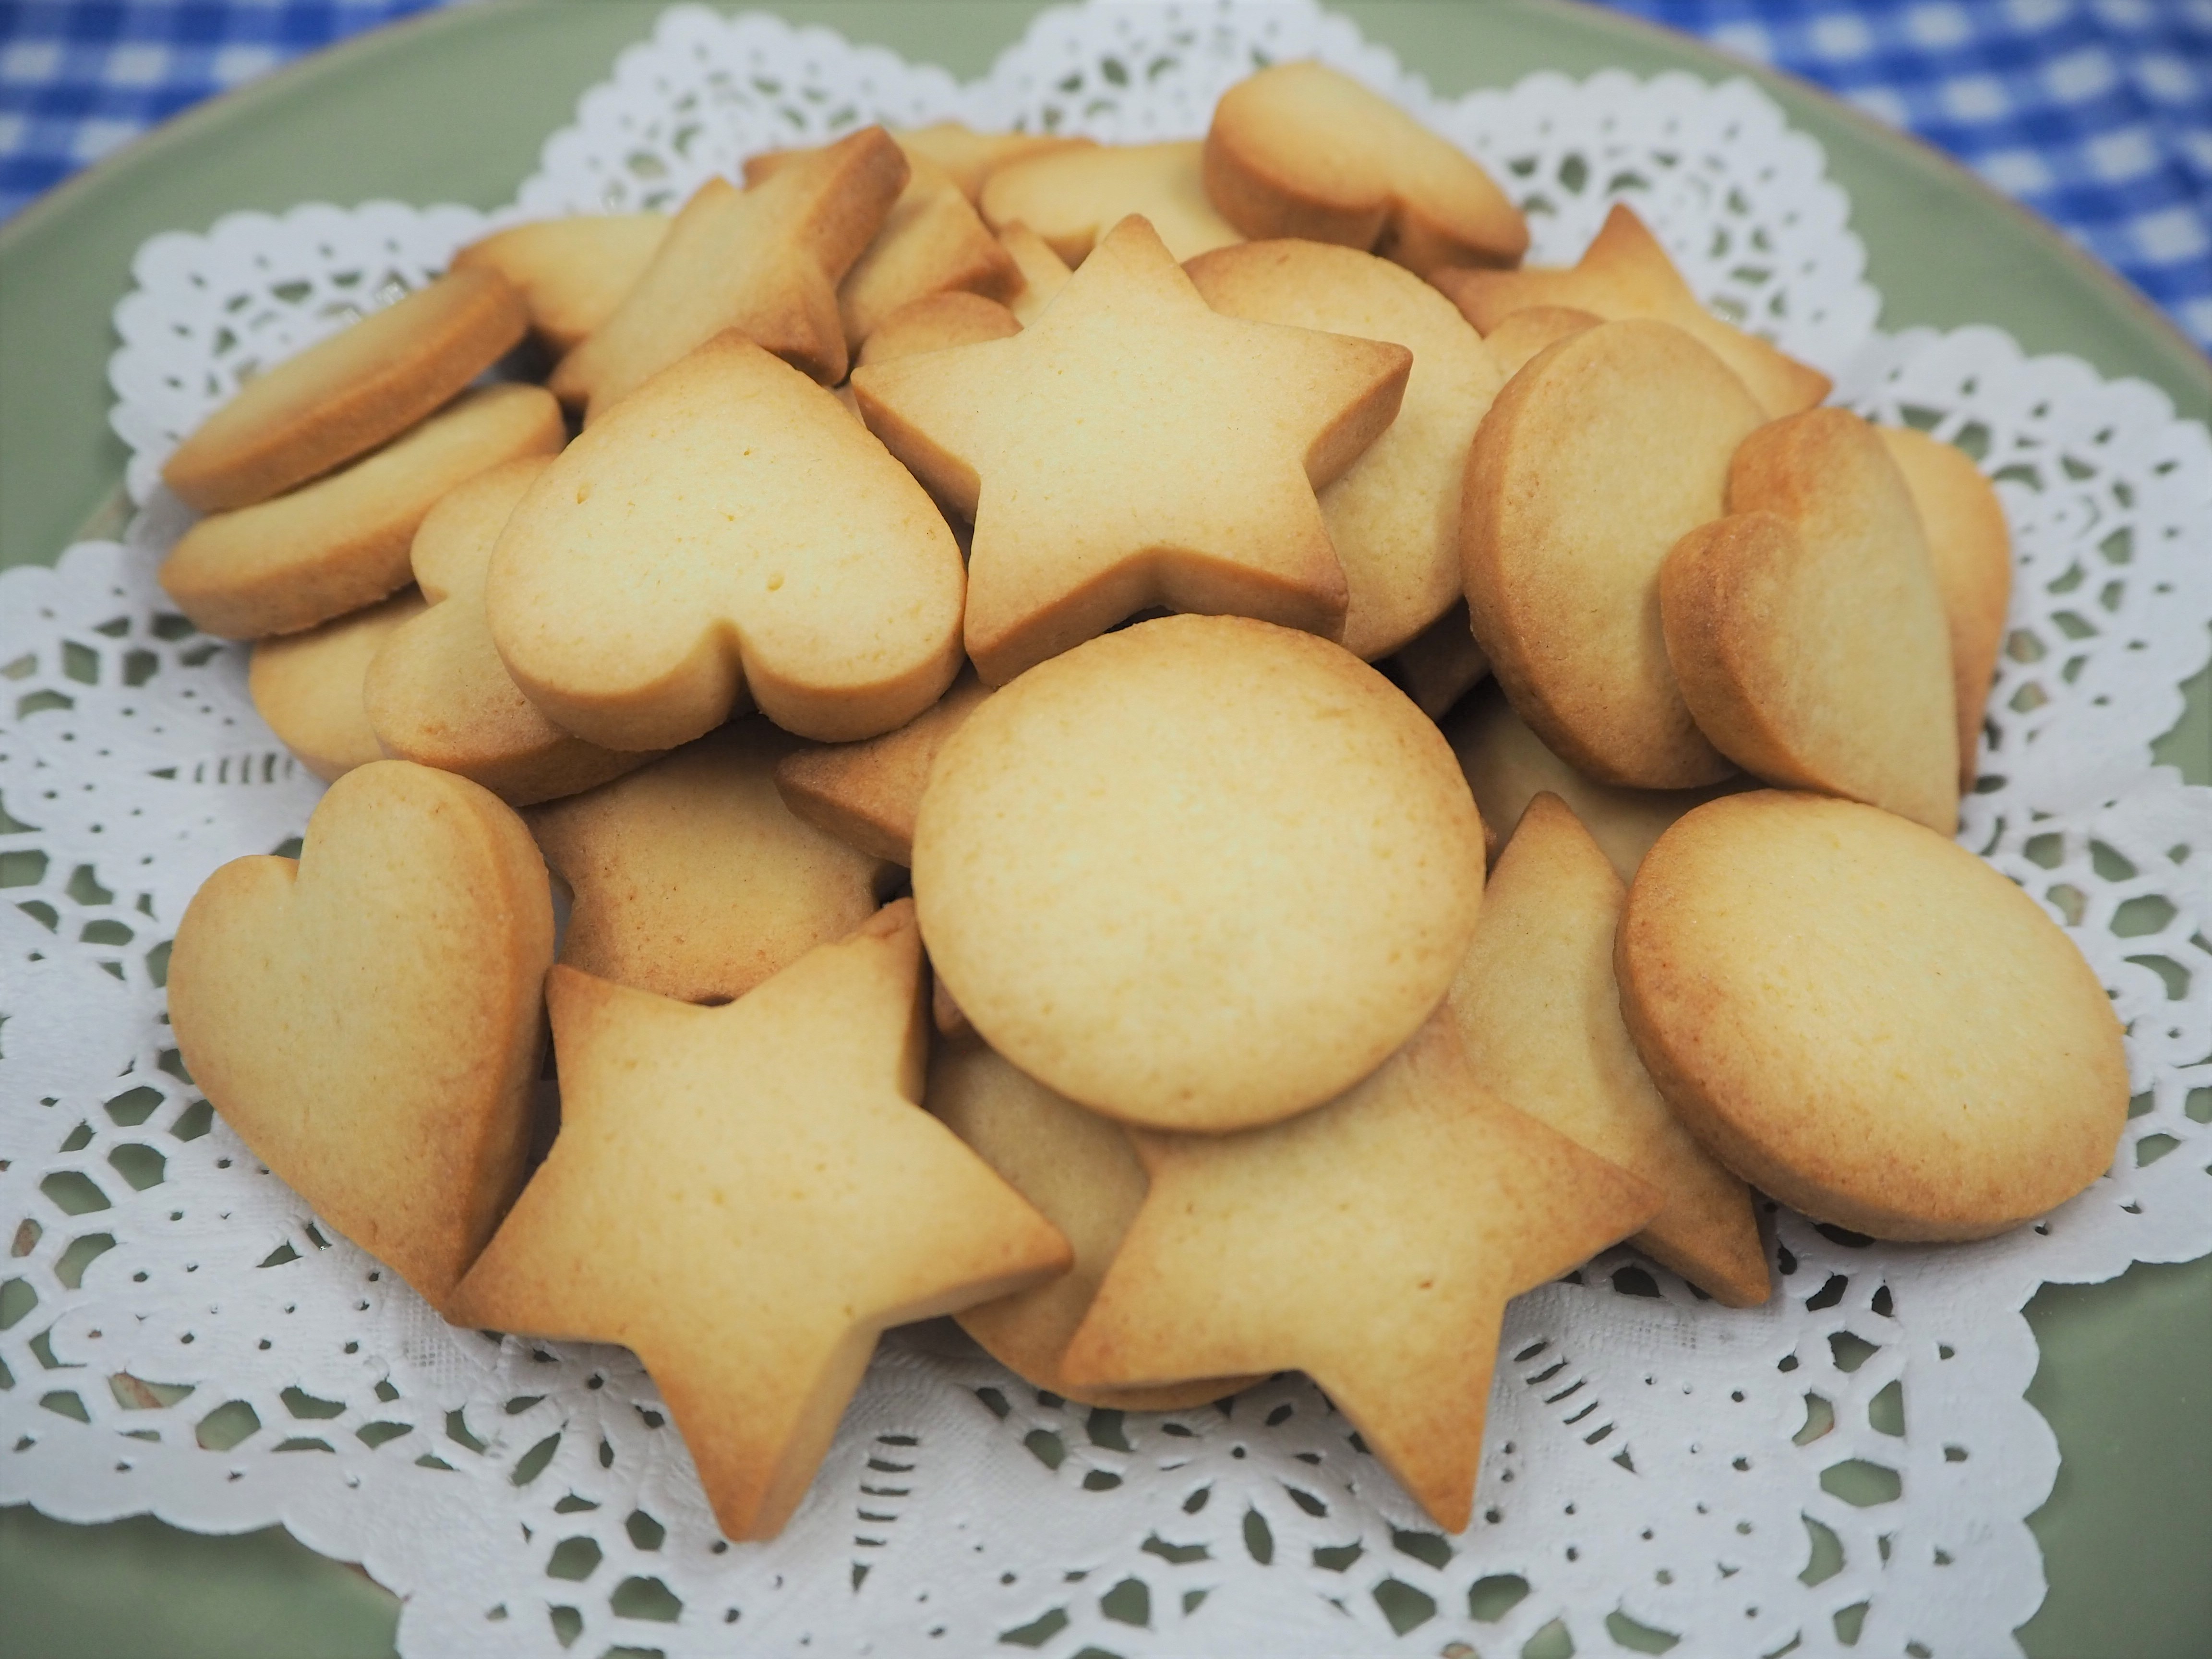 クッキー 日清 国内麦小麦粉 使用 レシピ 日清製粉ウェルナ